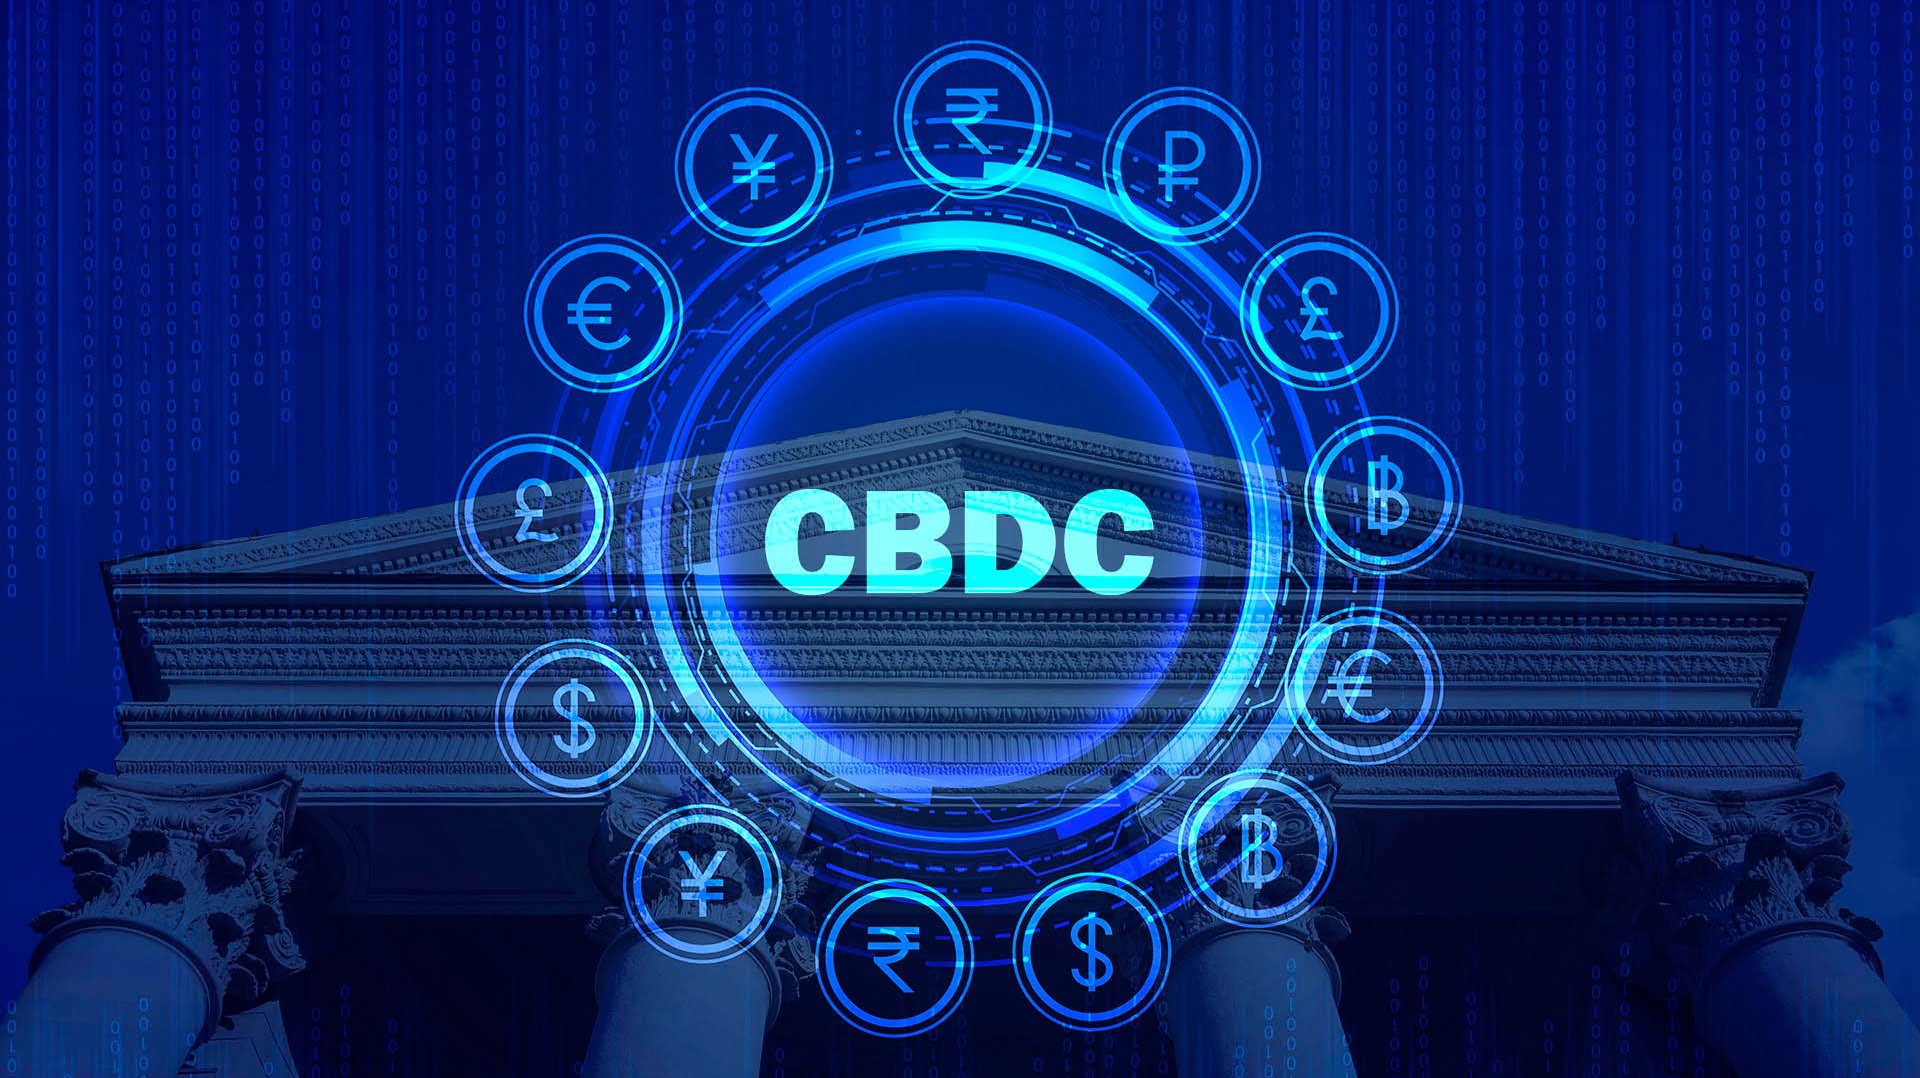 Опрос: доверие к CBDC больше чем к криптовалютам